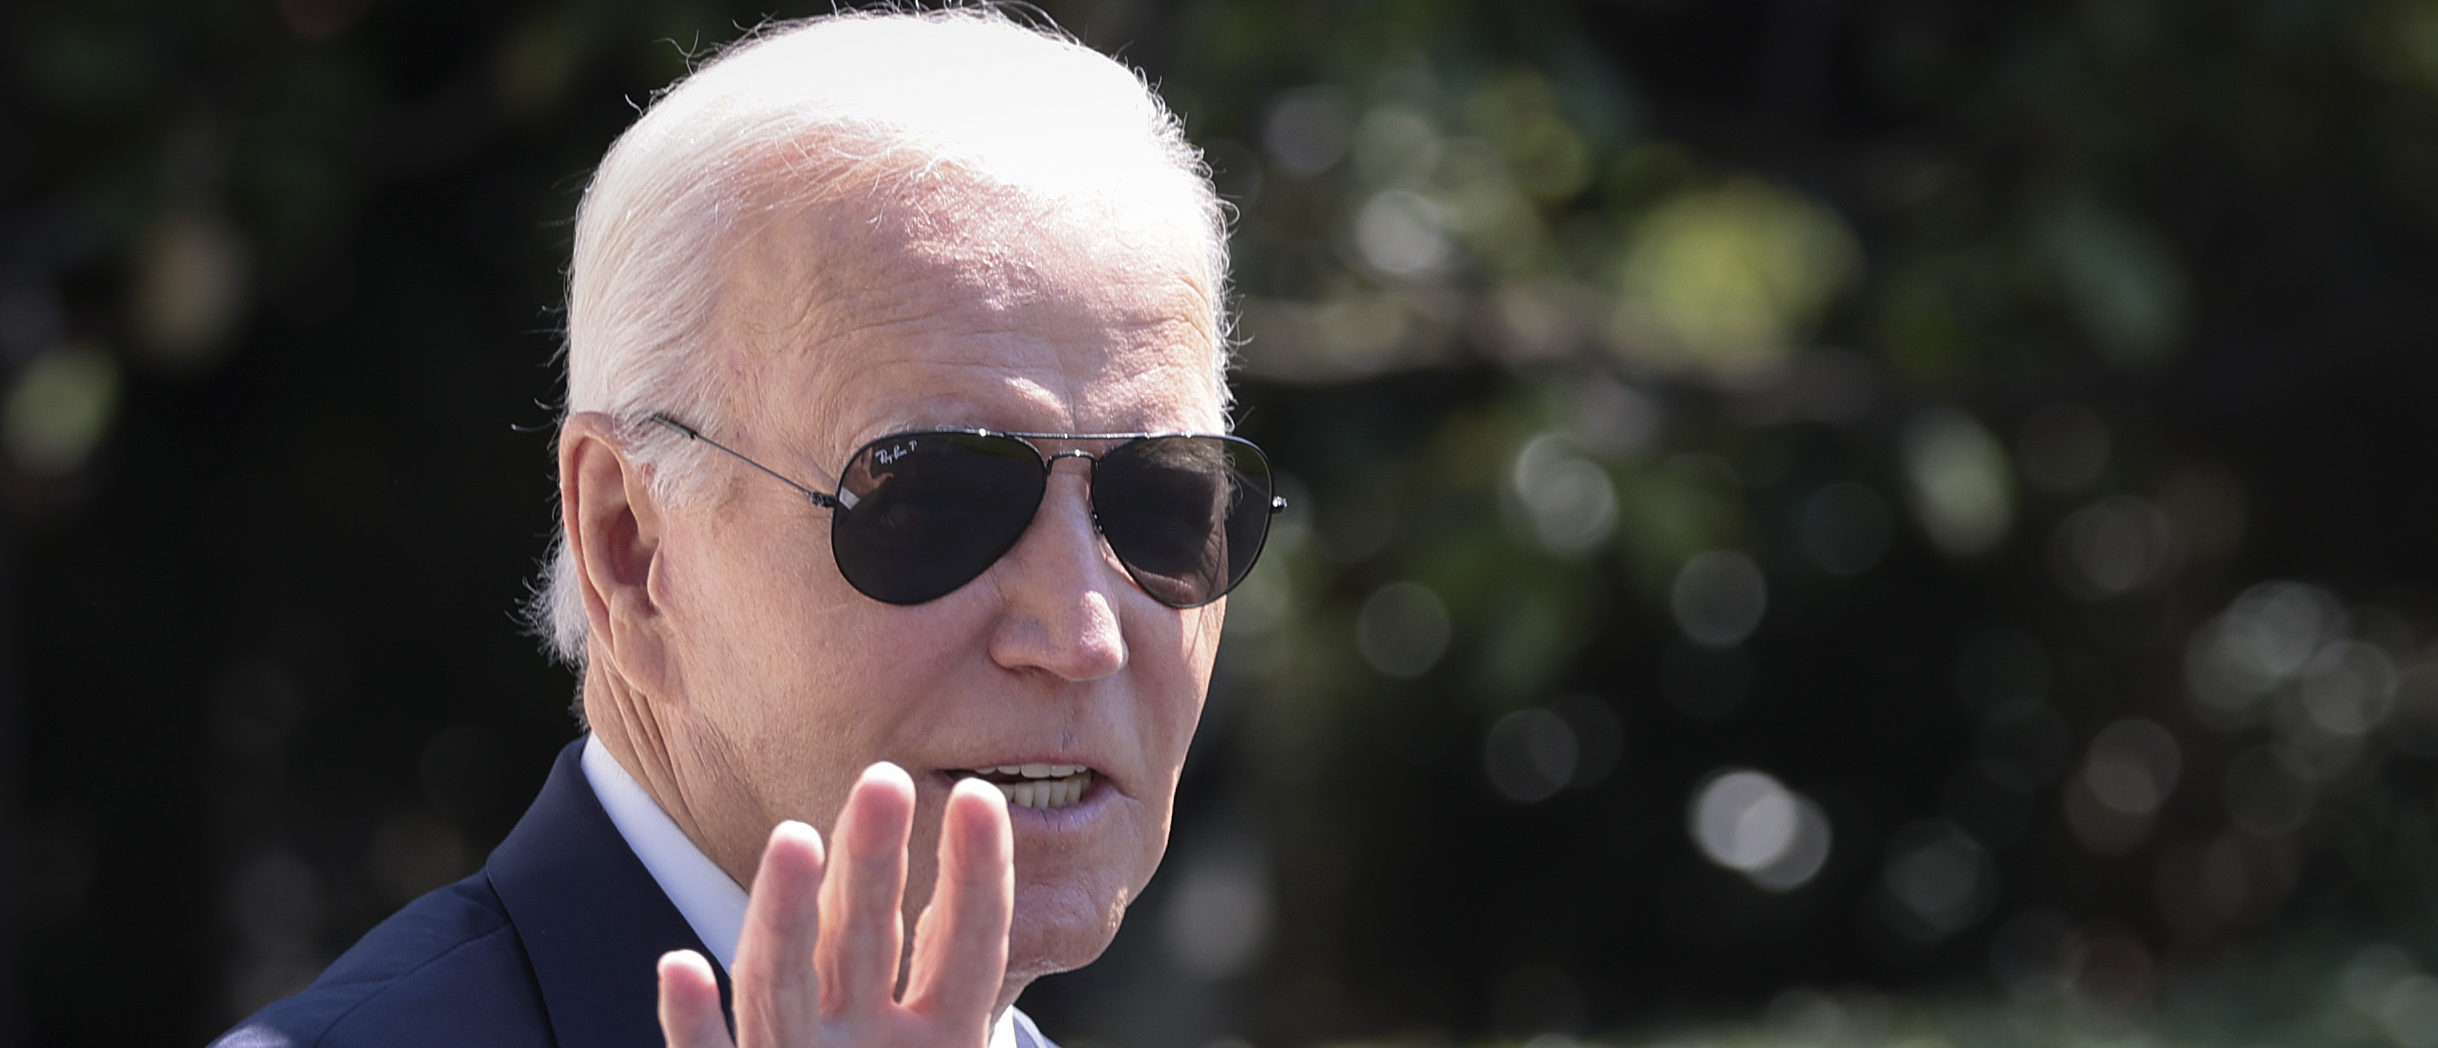 Biden Finally Visits East Palestine To Avoid Campaign Derailment